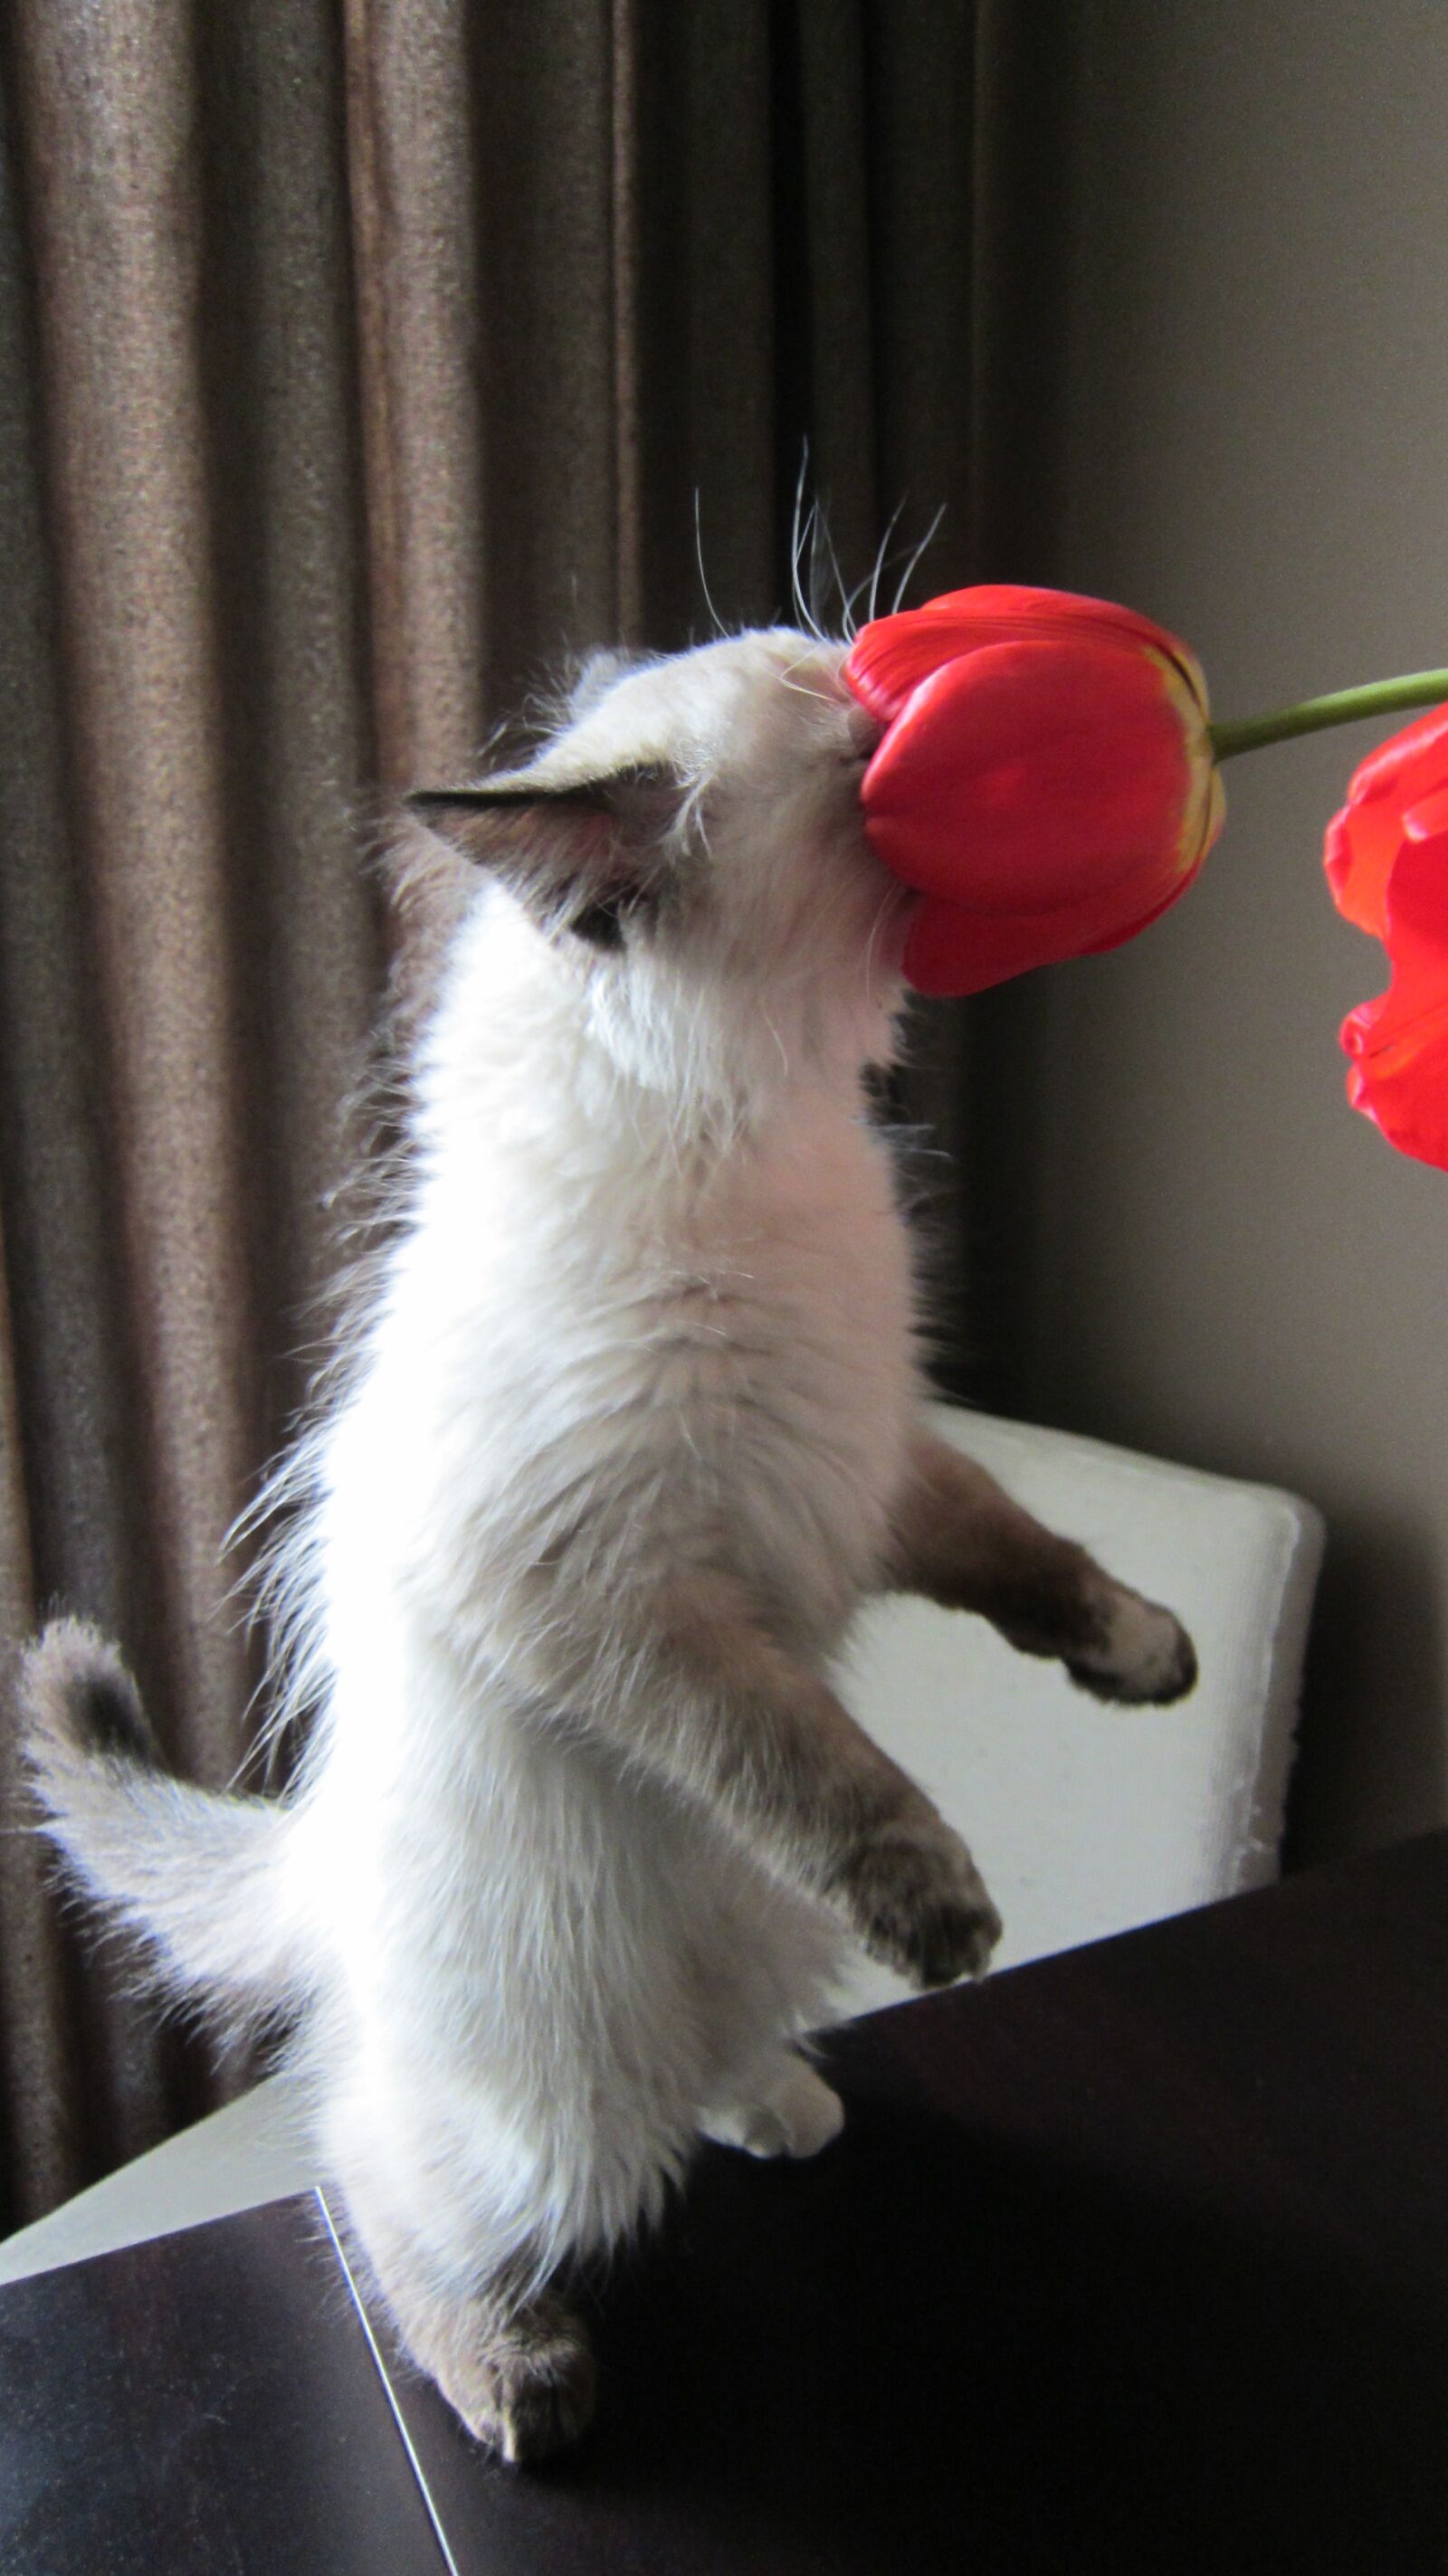 Canon PowerShot ELPH 500 HS (IXUS 310 HS / IXY 31S) sample photo. кошка, цветок, домашний питомец photography